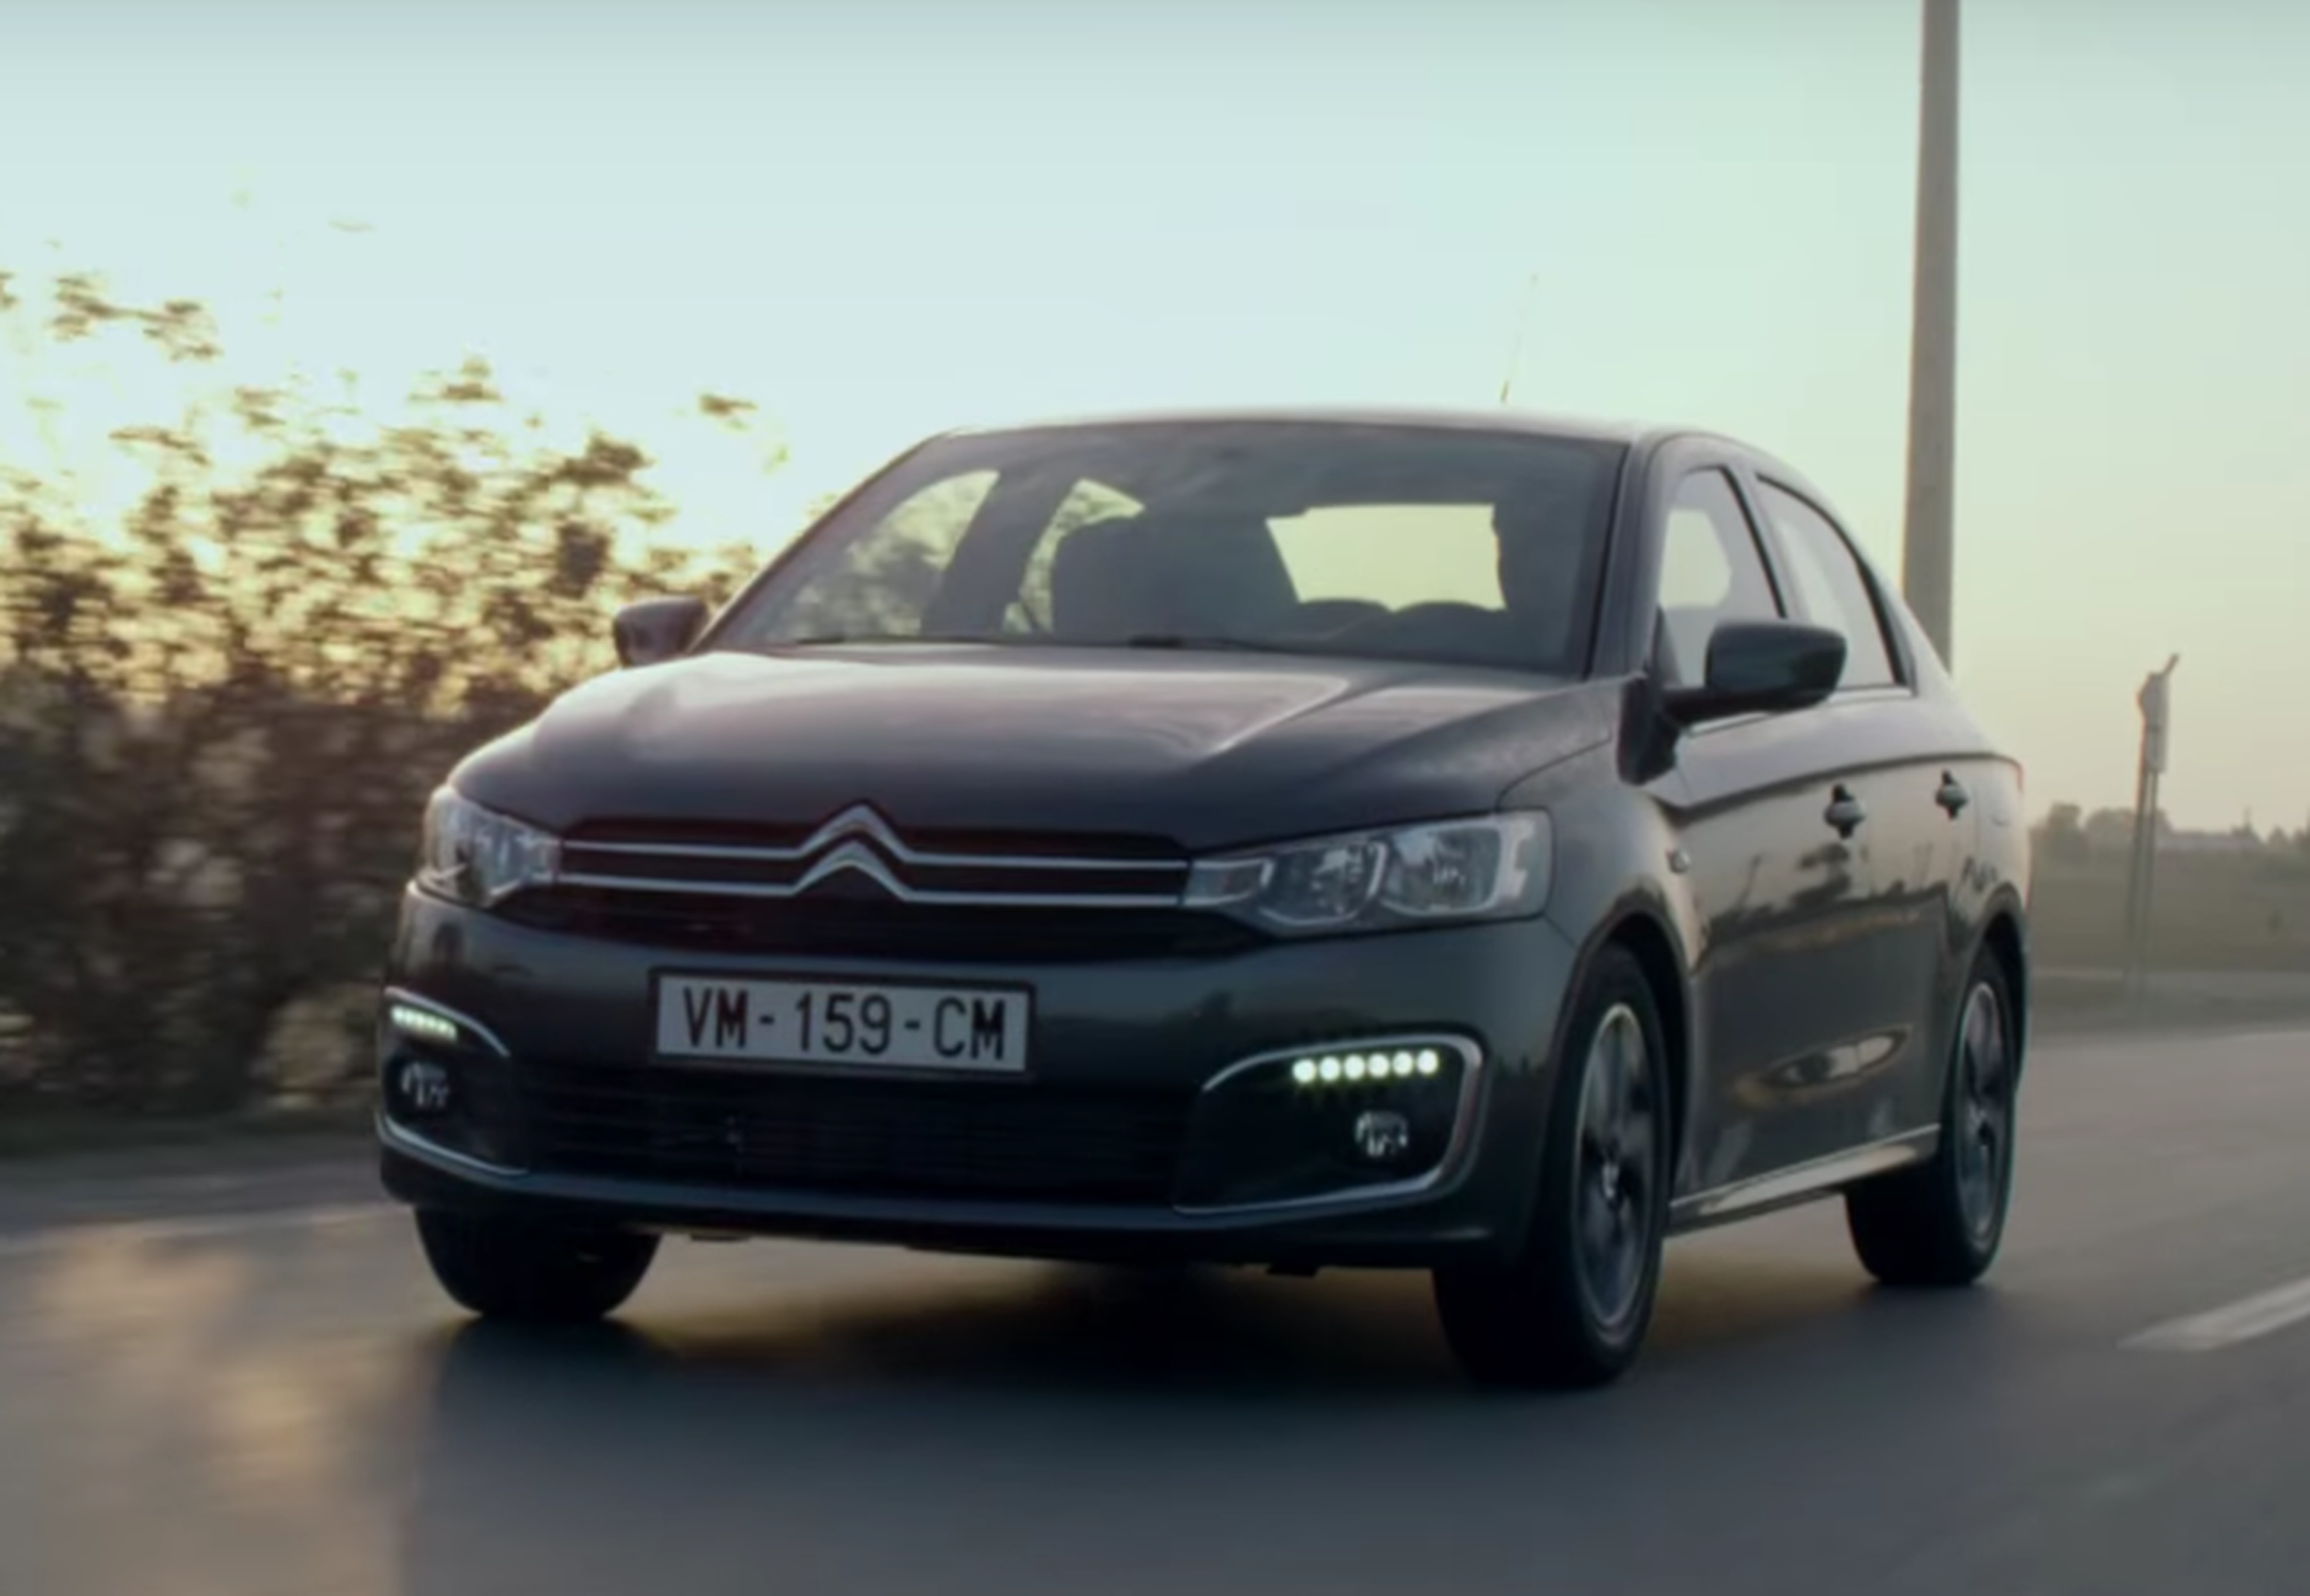 VÍDEO: Nuevo Citroën C-Elysée 2017 en acción, ¡mira los cambios!